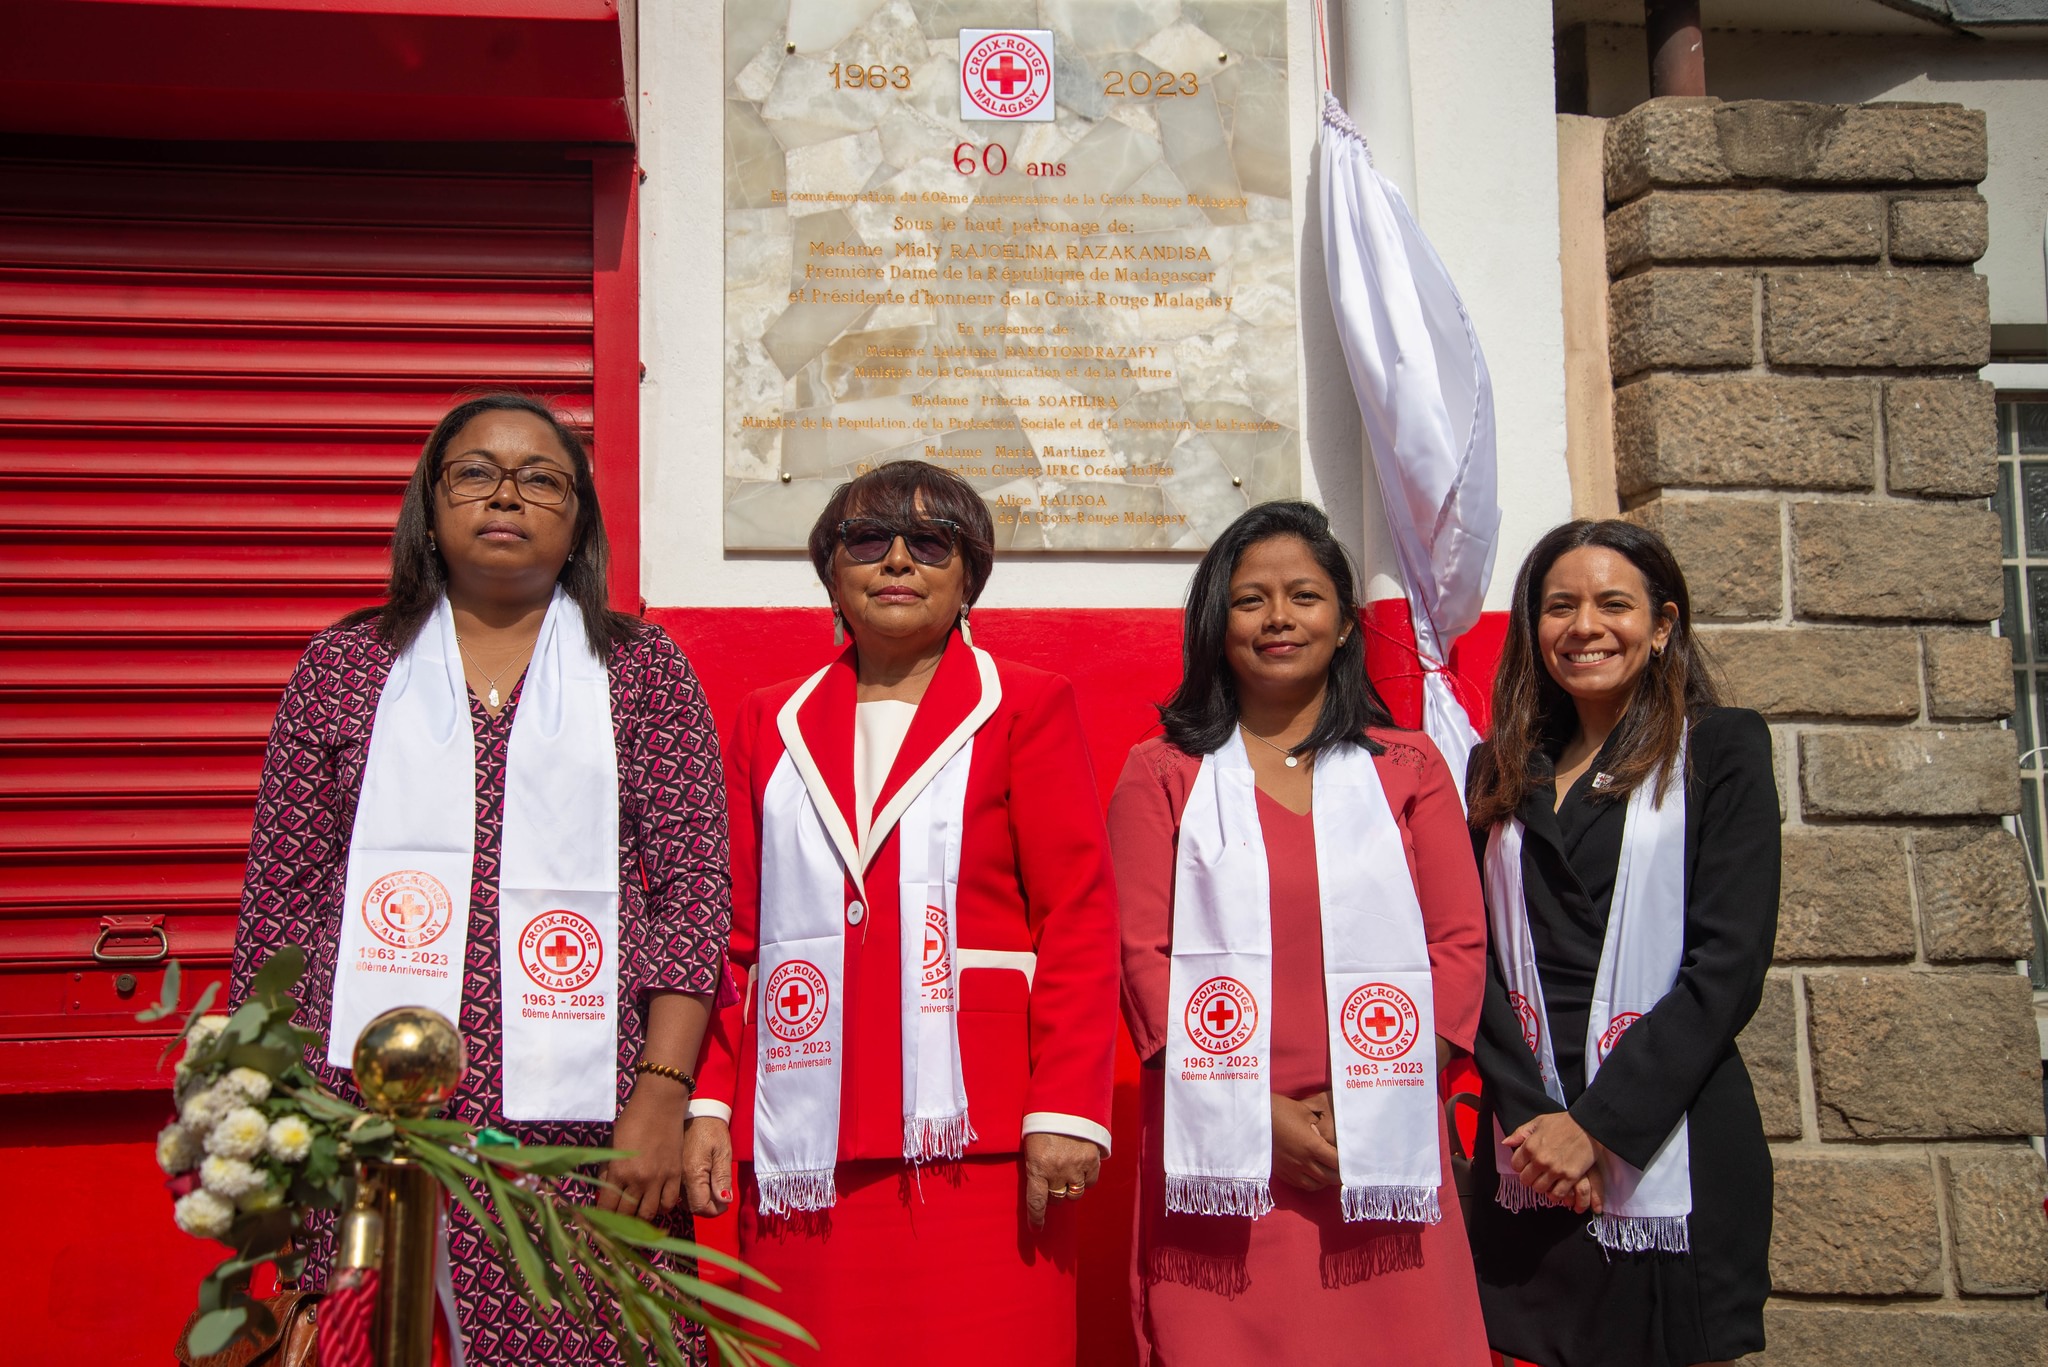 Le 60ème anniversaire de la Croix-Rouge Malagasy